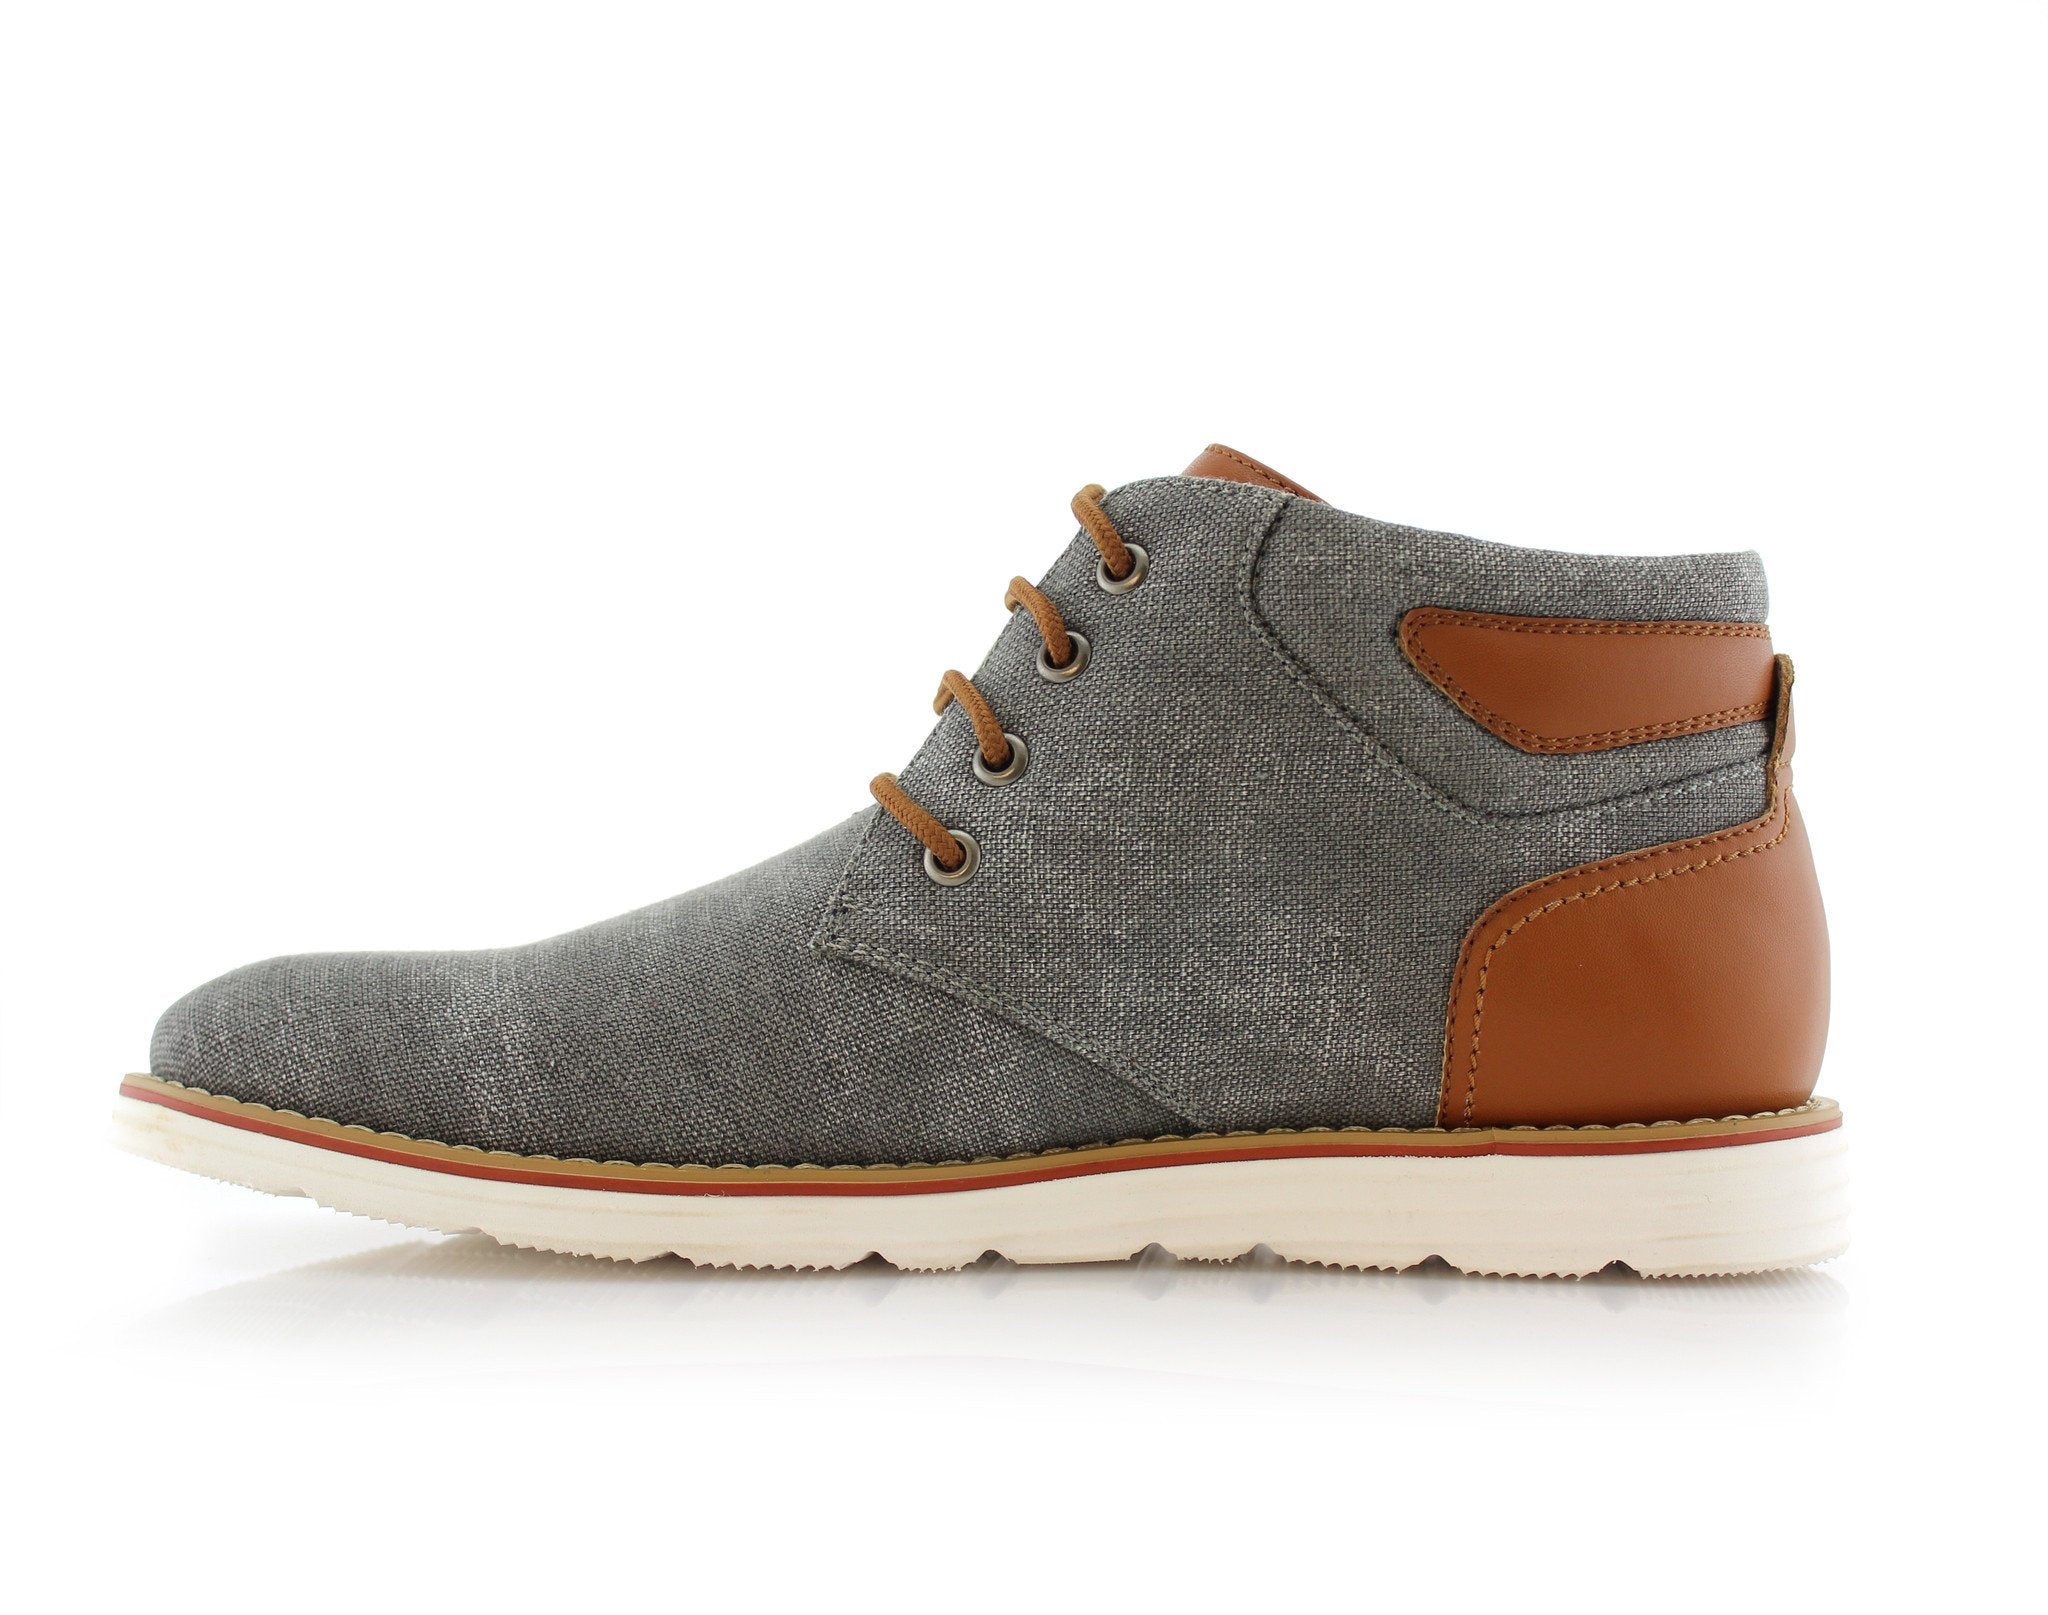 Two-Toned Chukka Sneaker Boots | Owen by Ferro Aldo | Conal Footwear | Inner Side Angle View